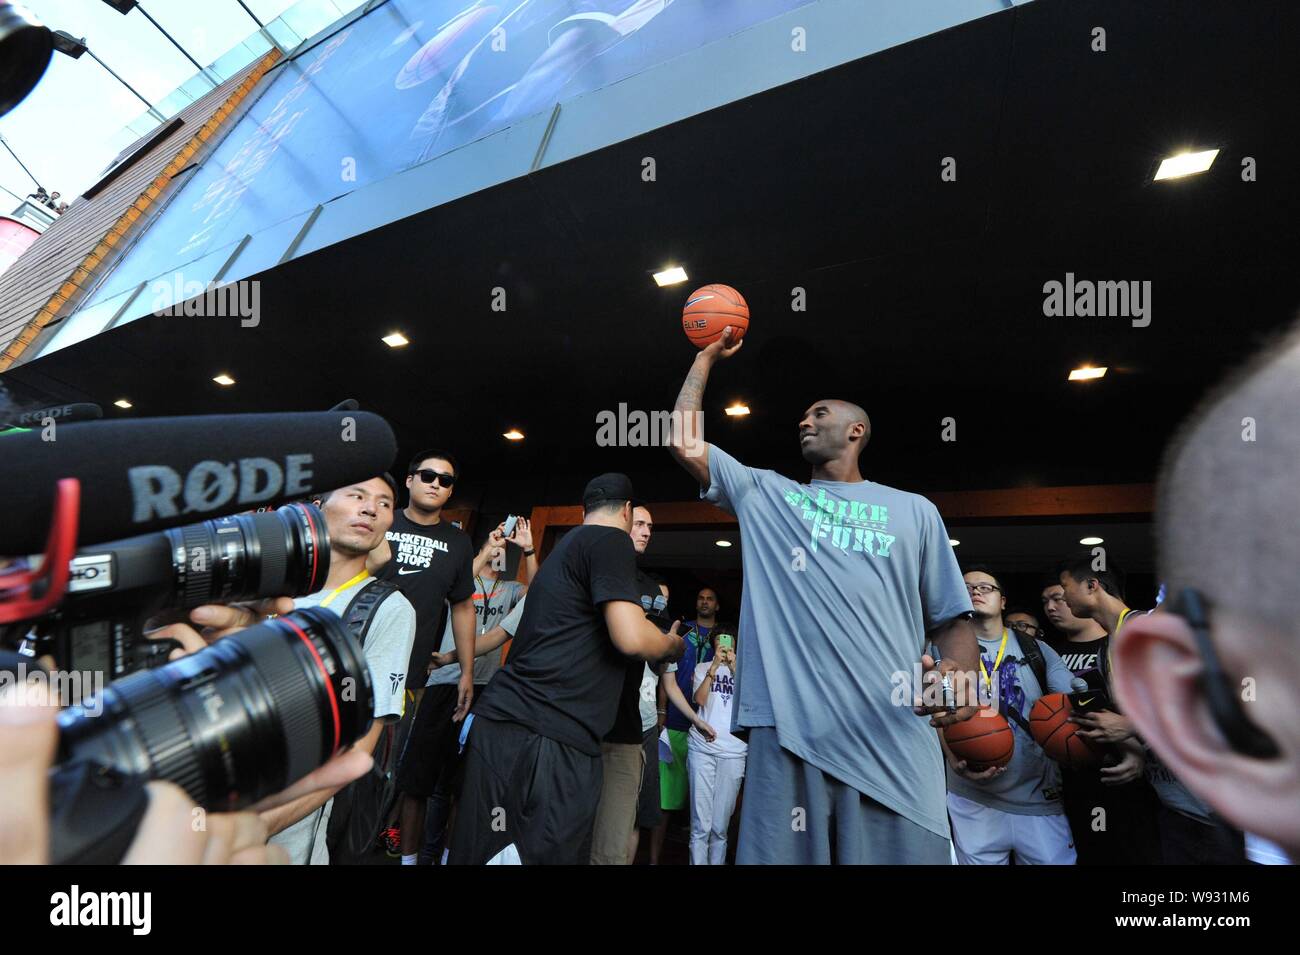 La estrella de la NBA Kobe Bryant, centro, se prepara para lanzar una  pelota de baloncesto a una multitud de fans durante un evento promocional  en una tienda de ropa deportiva de